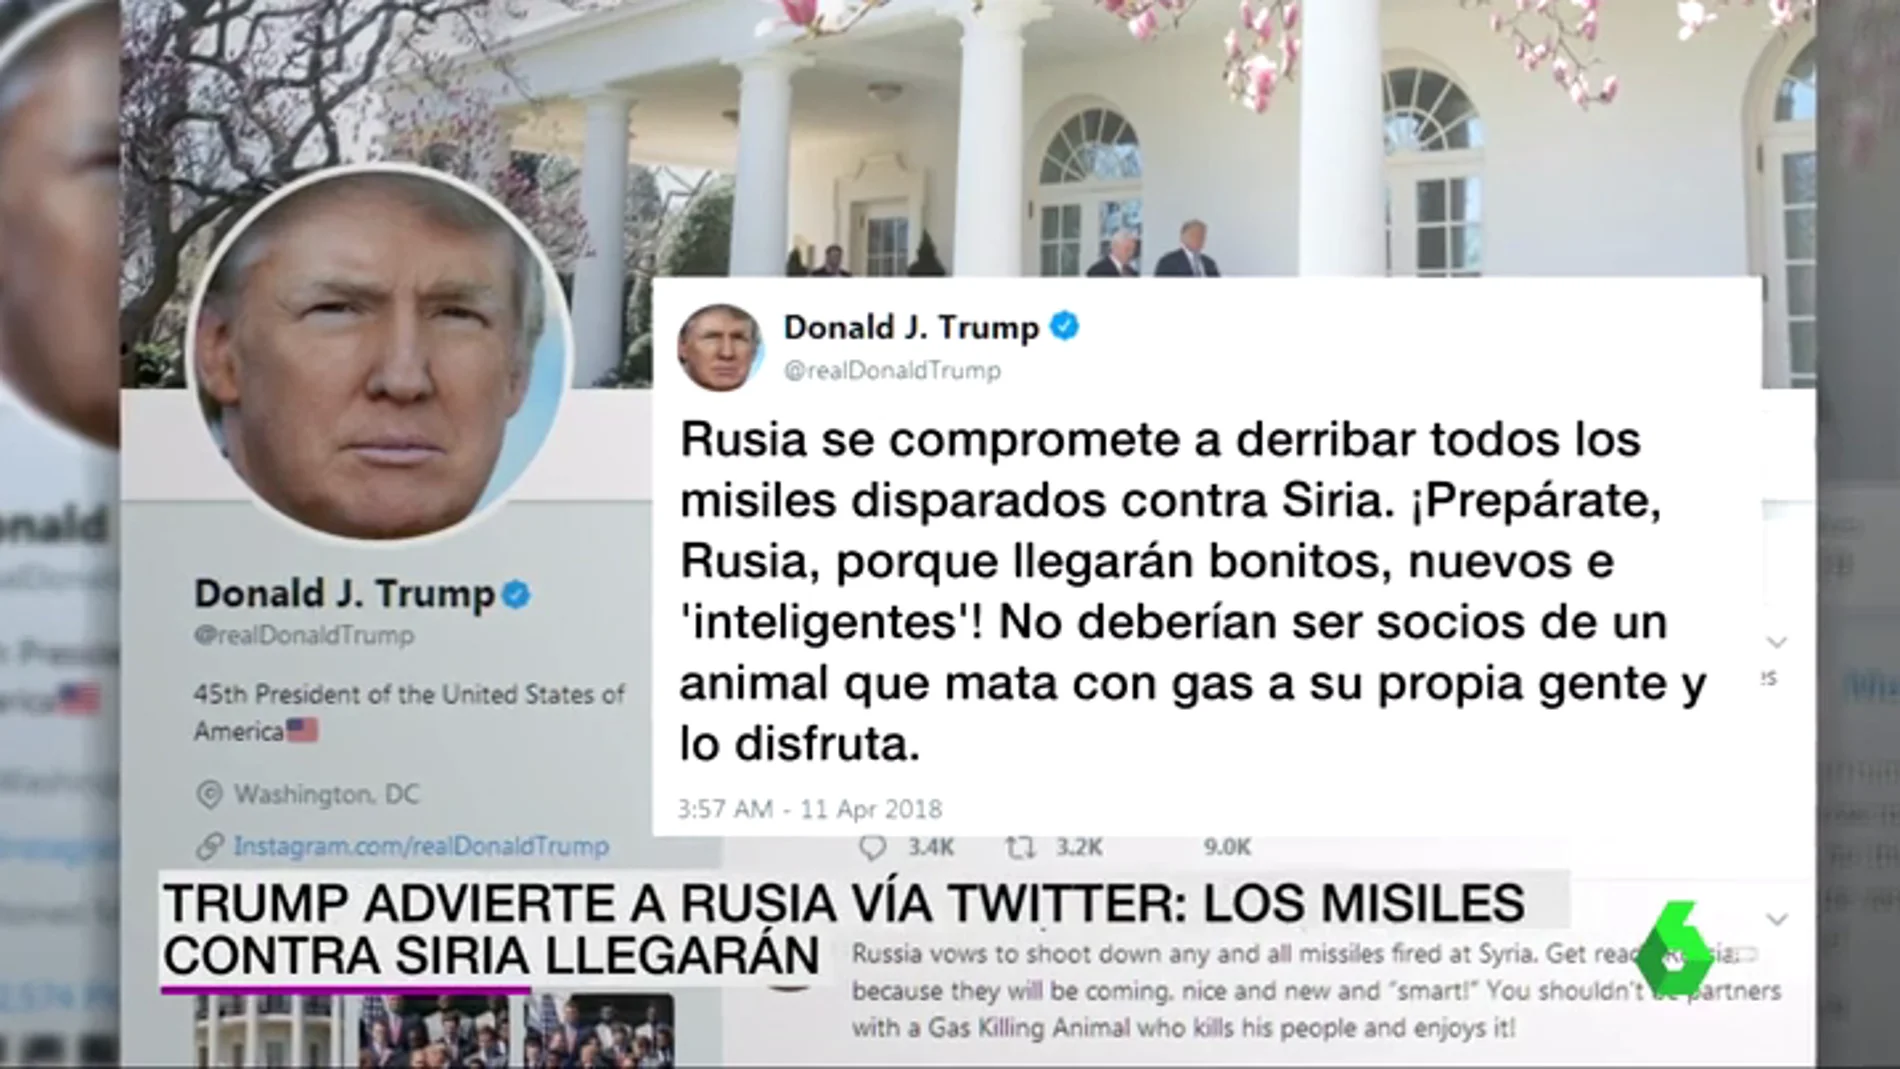 Trump advierte a Rusia vía Twitter de que se prepare para un ataque con misiles en Siria: "Serán bonitos, nuevos e inteligentes"